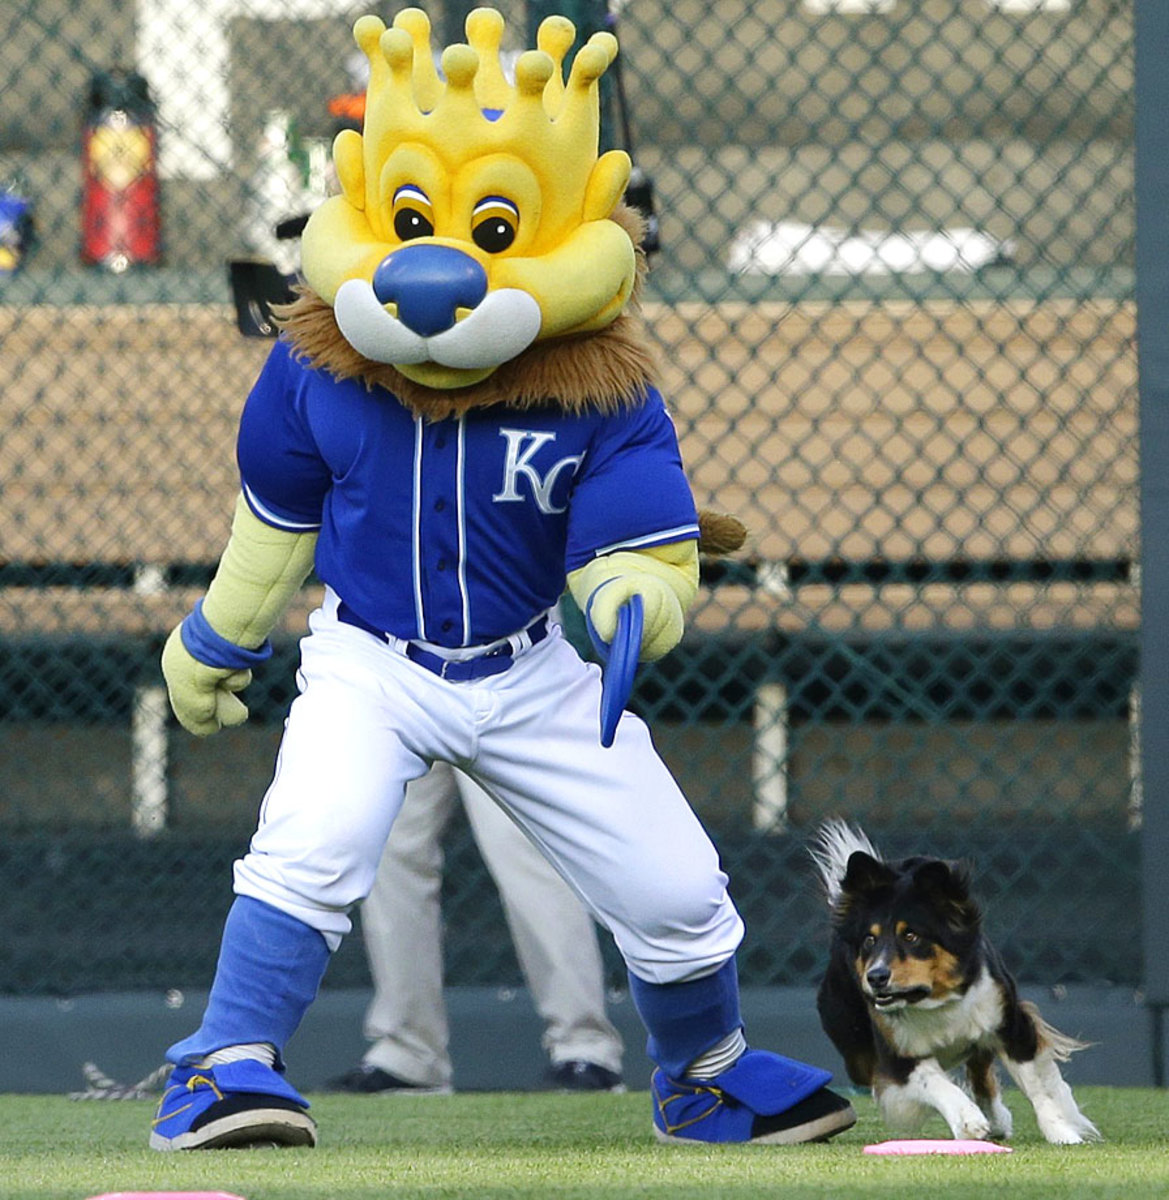 Kansas-City-Royals-mascot-Sluggerrr-frisbee-dog.jpg